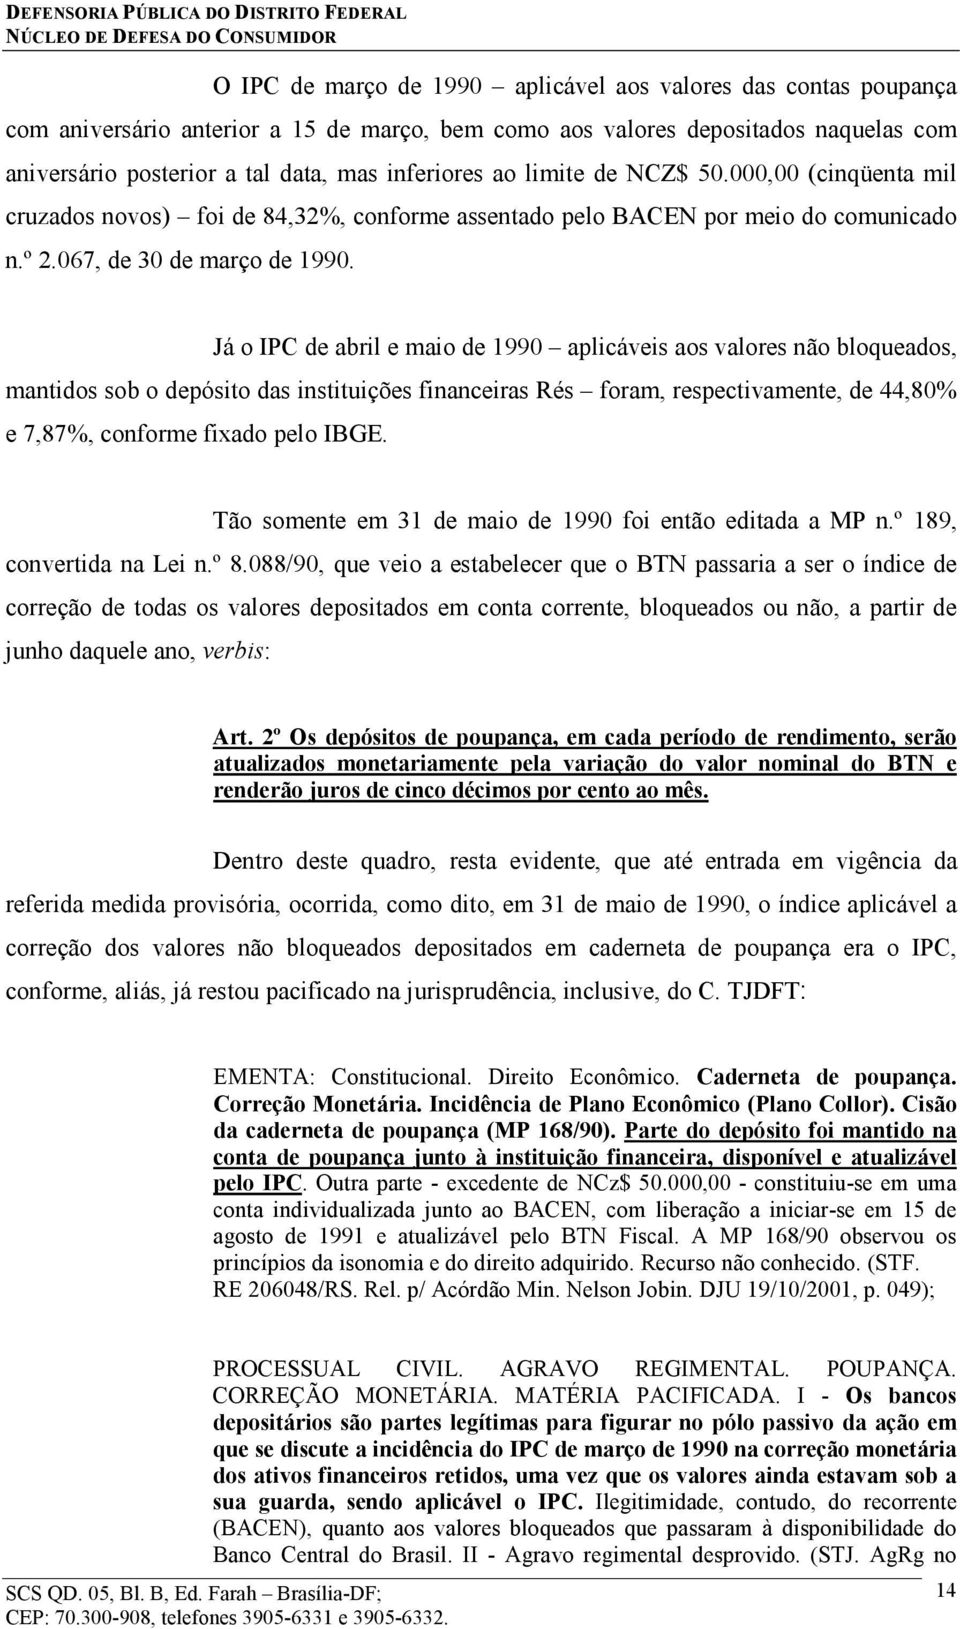 Já o IPC de abril e maio de 1990 aplicáveis aos valores não bloqueados, mantidos sob o depósito das instituições financeiras Rés foram, respectivamente, de 44,80% e 7,87%, conforme fixado pelo IBGE.